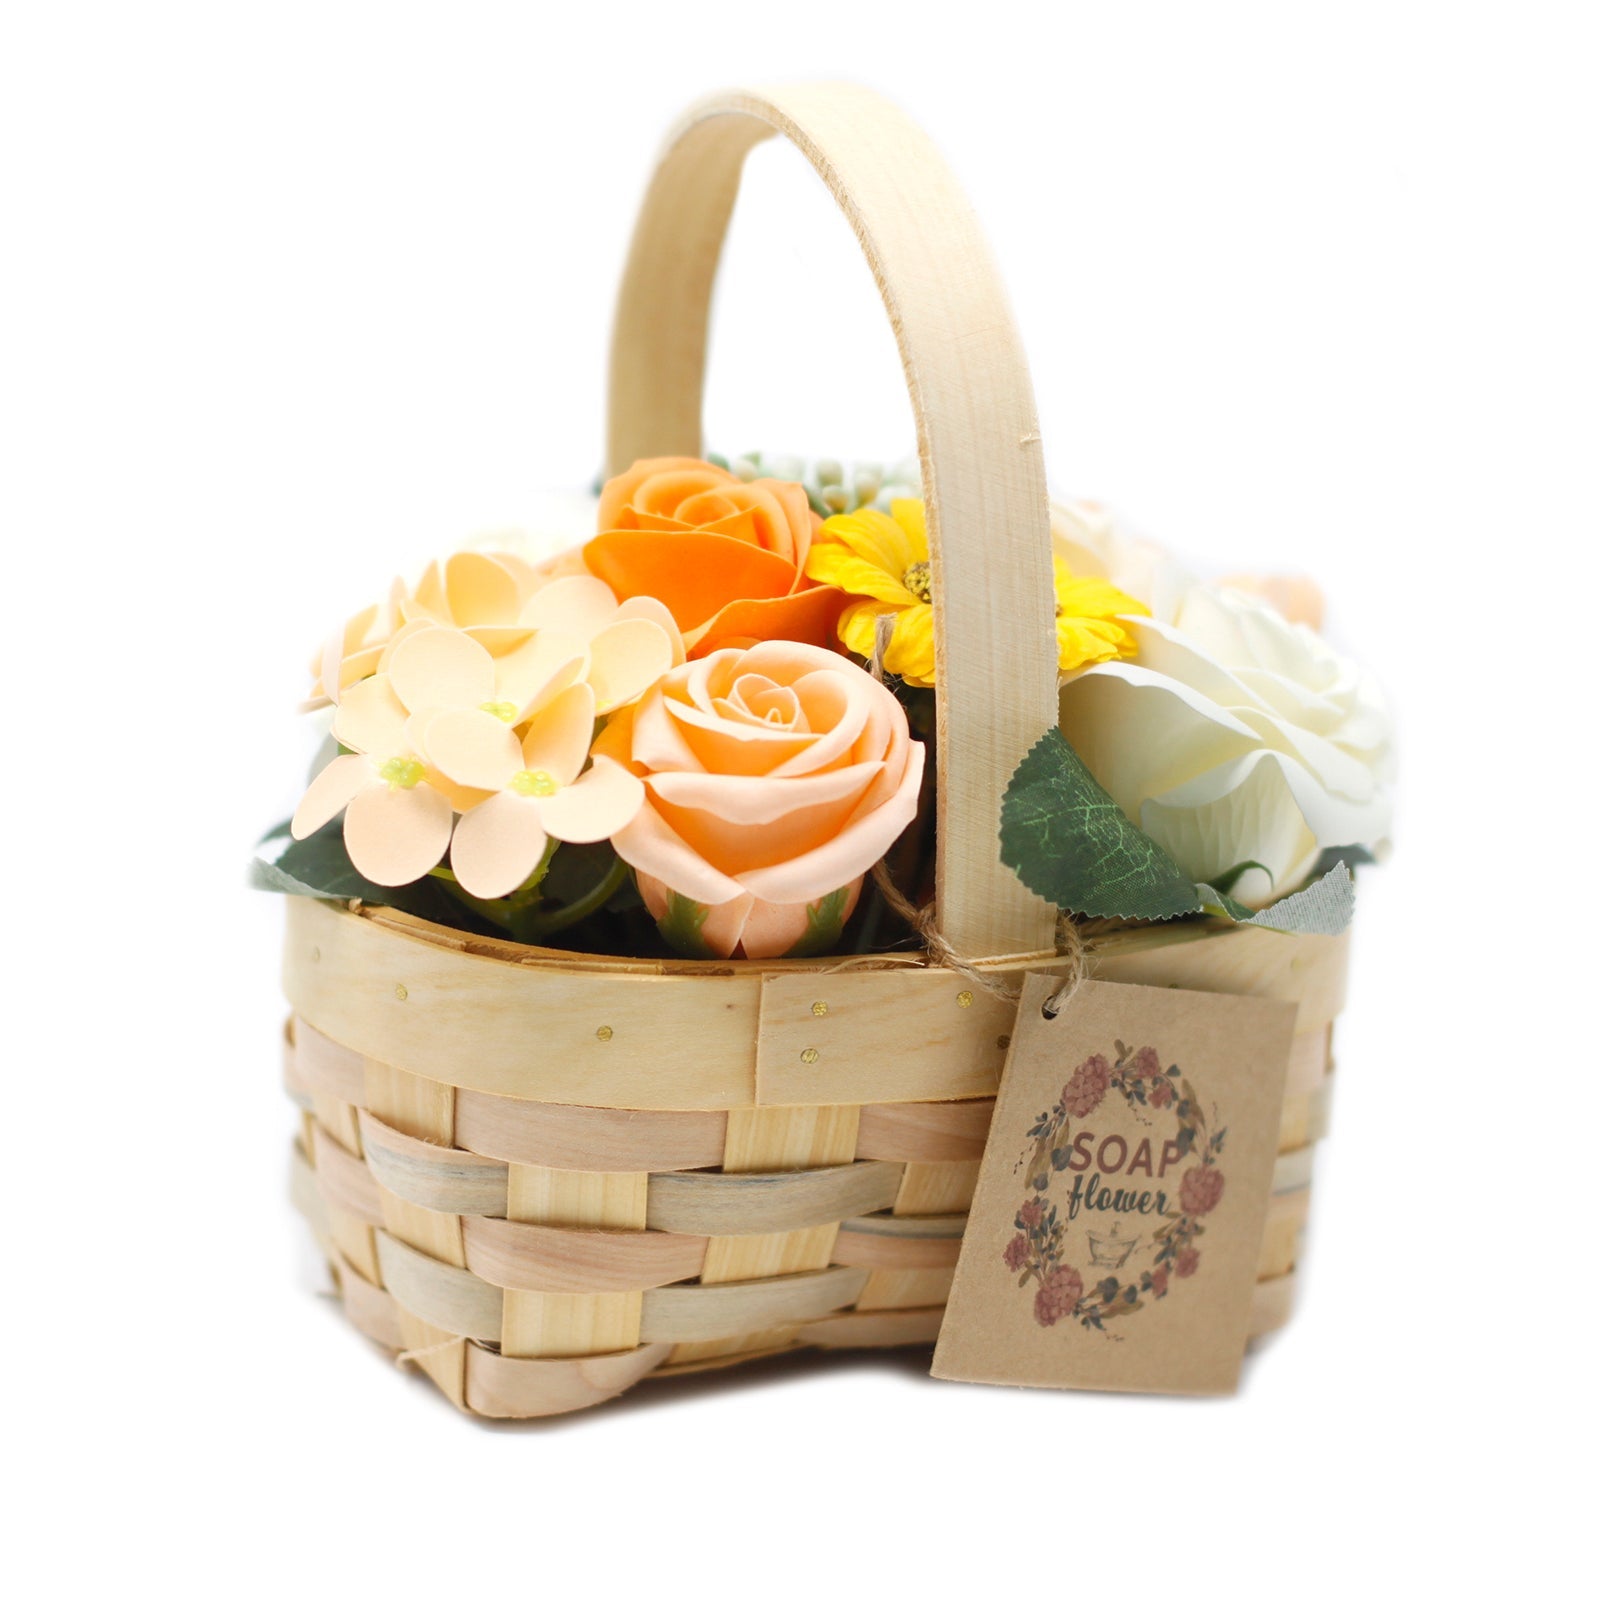 View Medium Orange Bouquet in Wicker Basket information